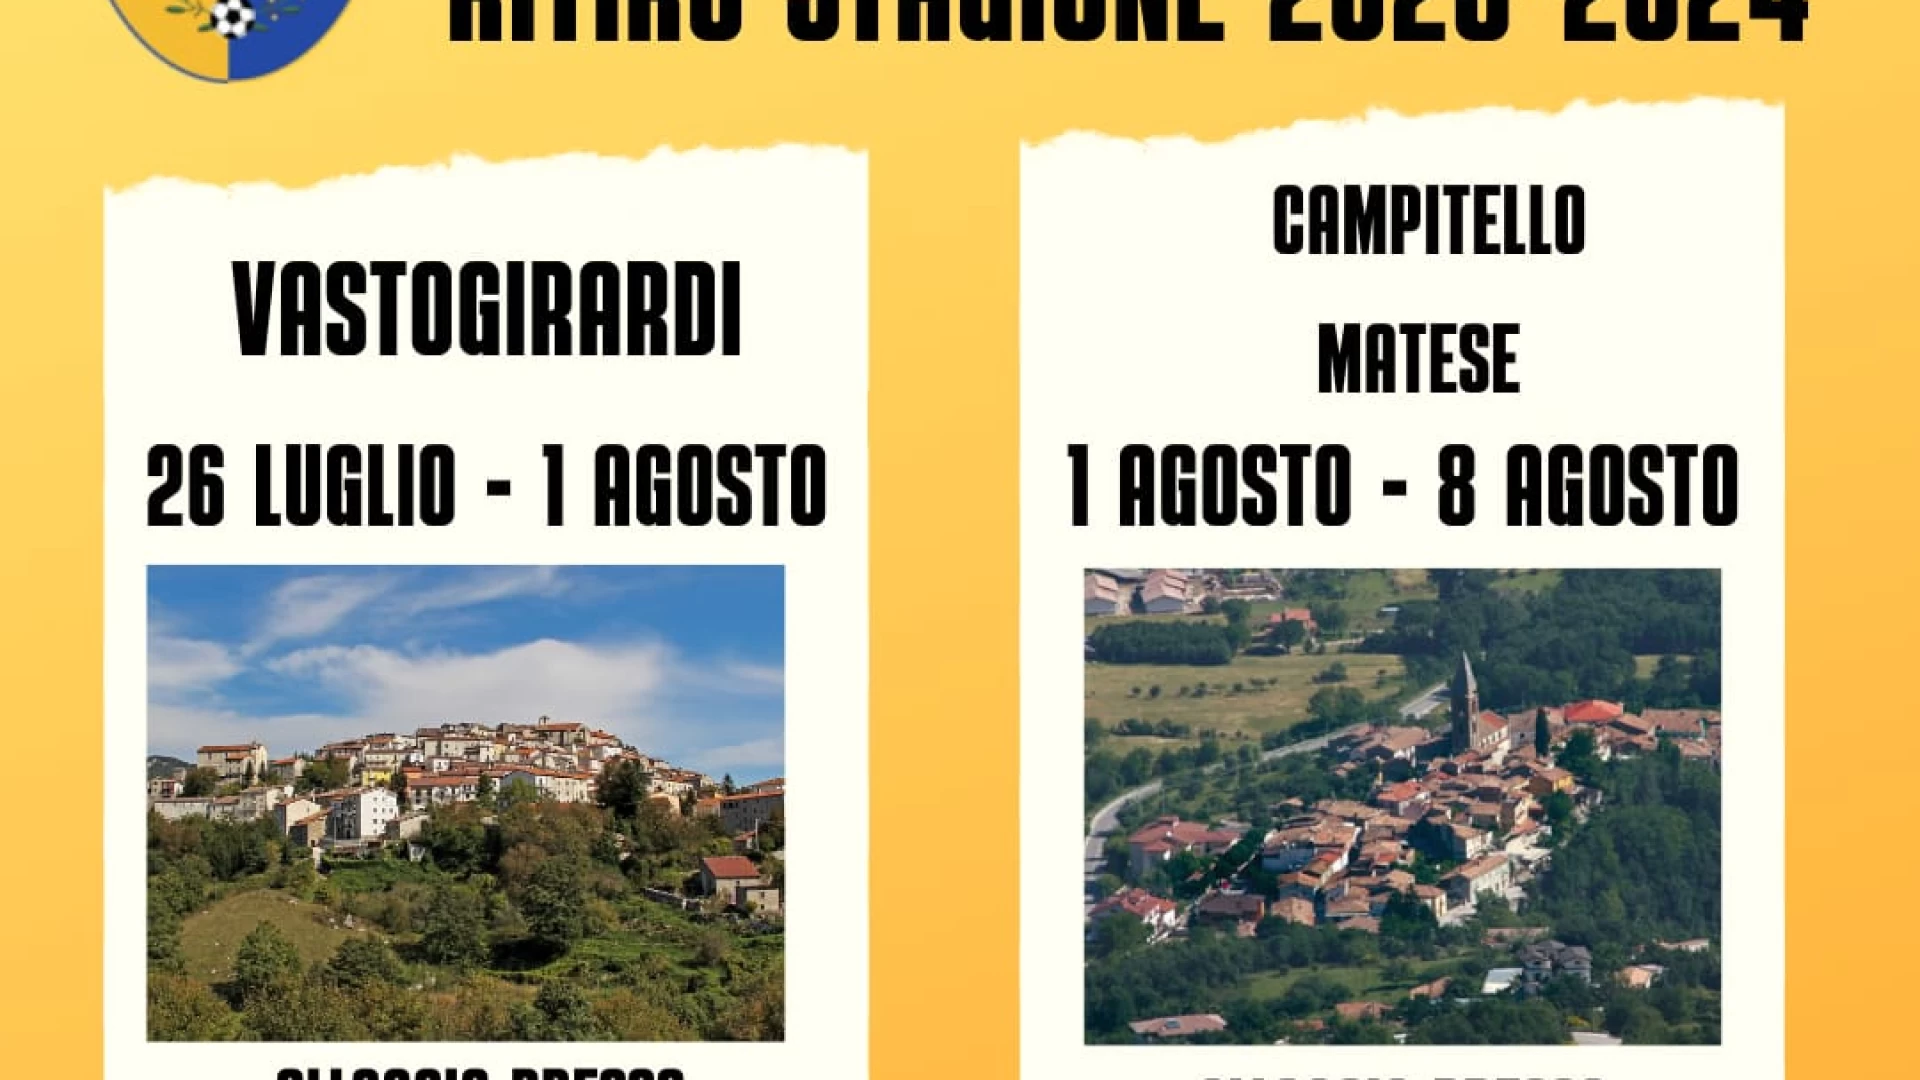 Serie D: il Vastogirardi in ritiro dal 26 luglio all’8 agosto. La società annuncia le conferme di Antogiovanni e Iacullo.